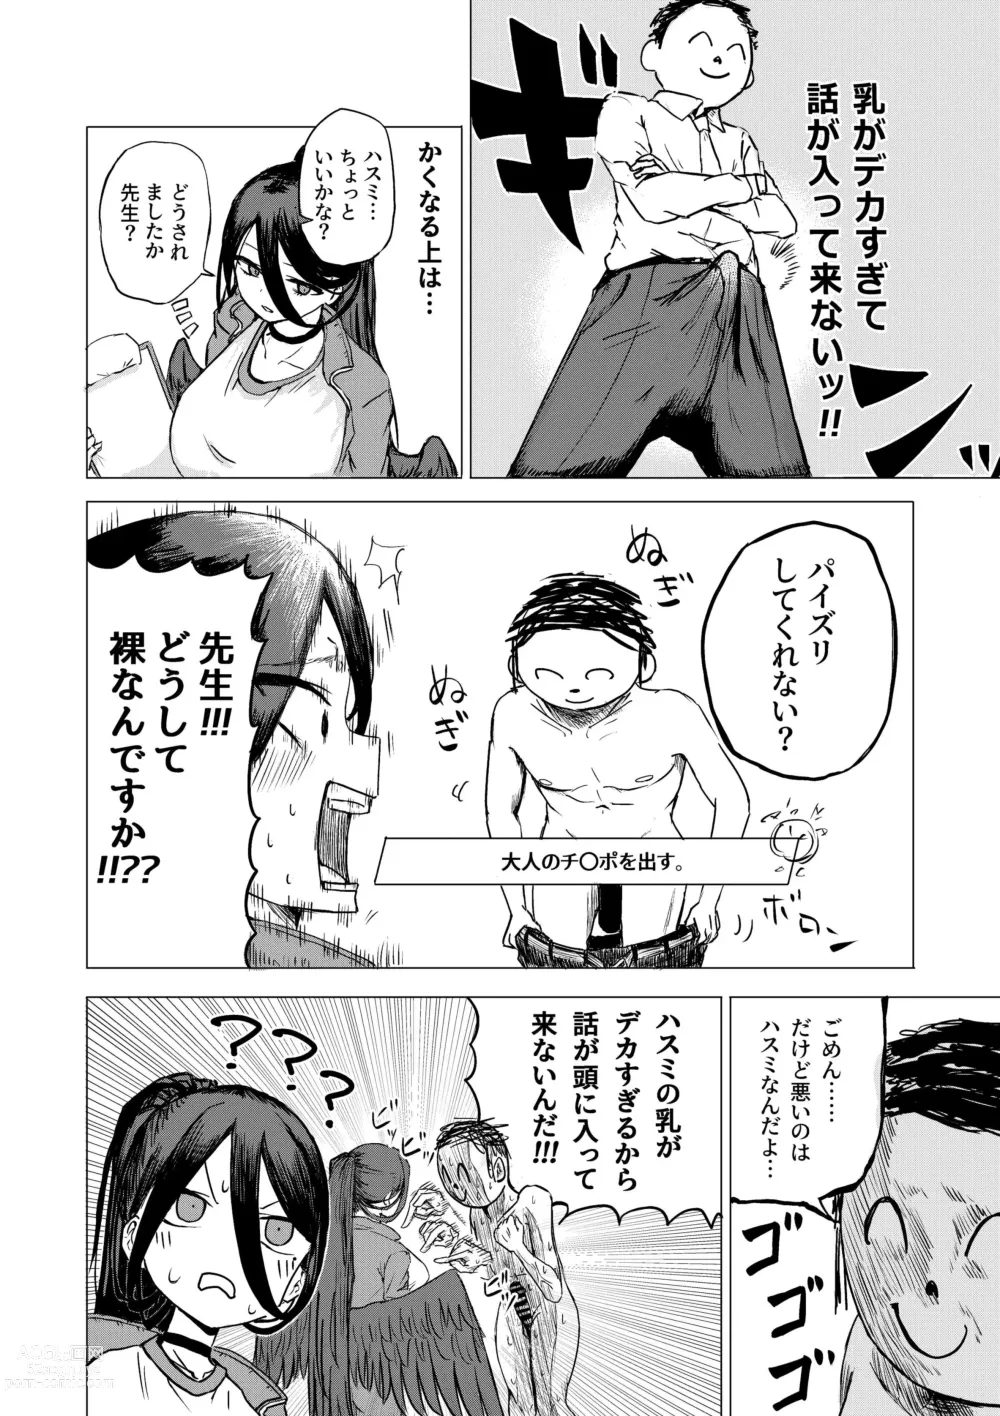 Page 5 of doujinshi Seigi Jitsugen Iinkai Fukuiinchou